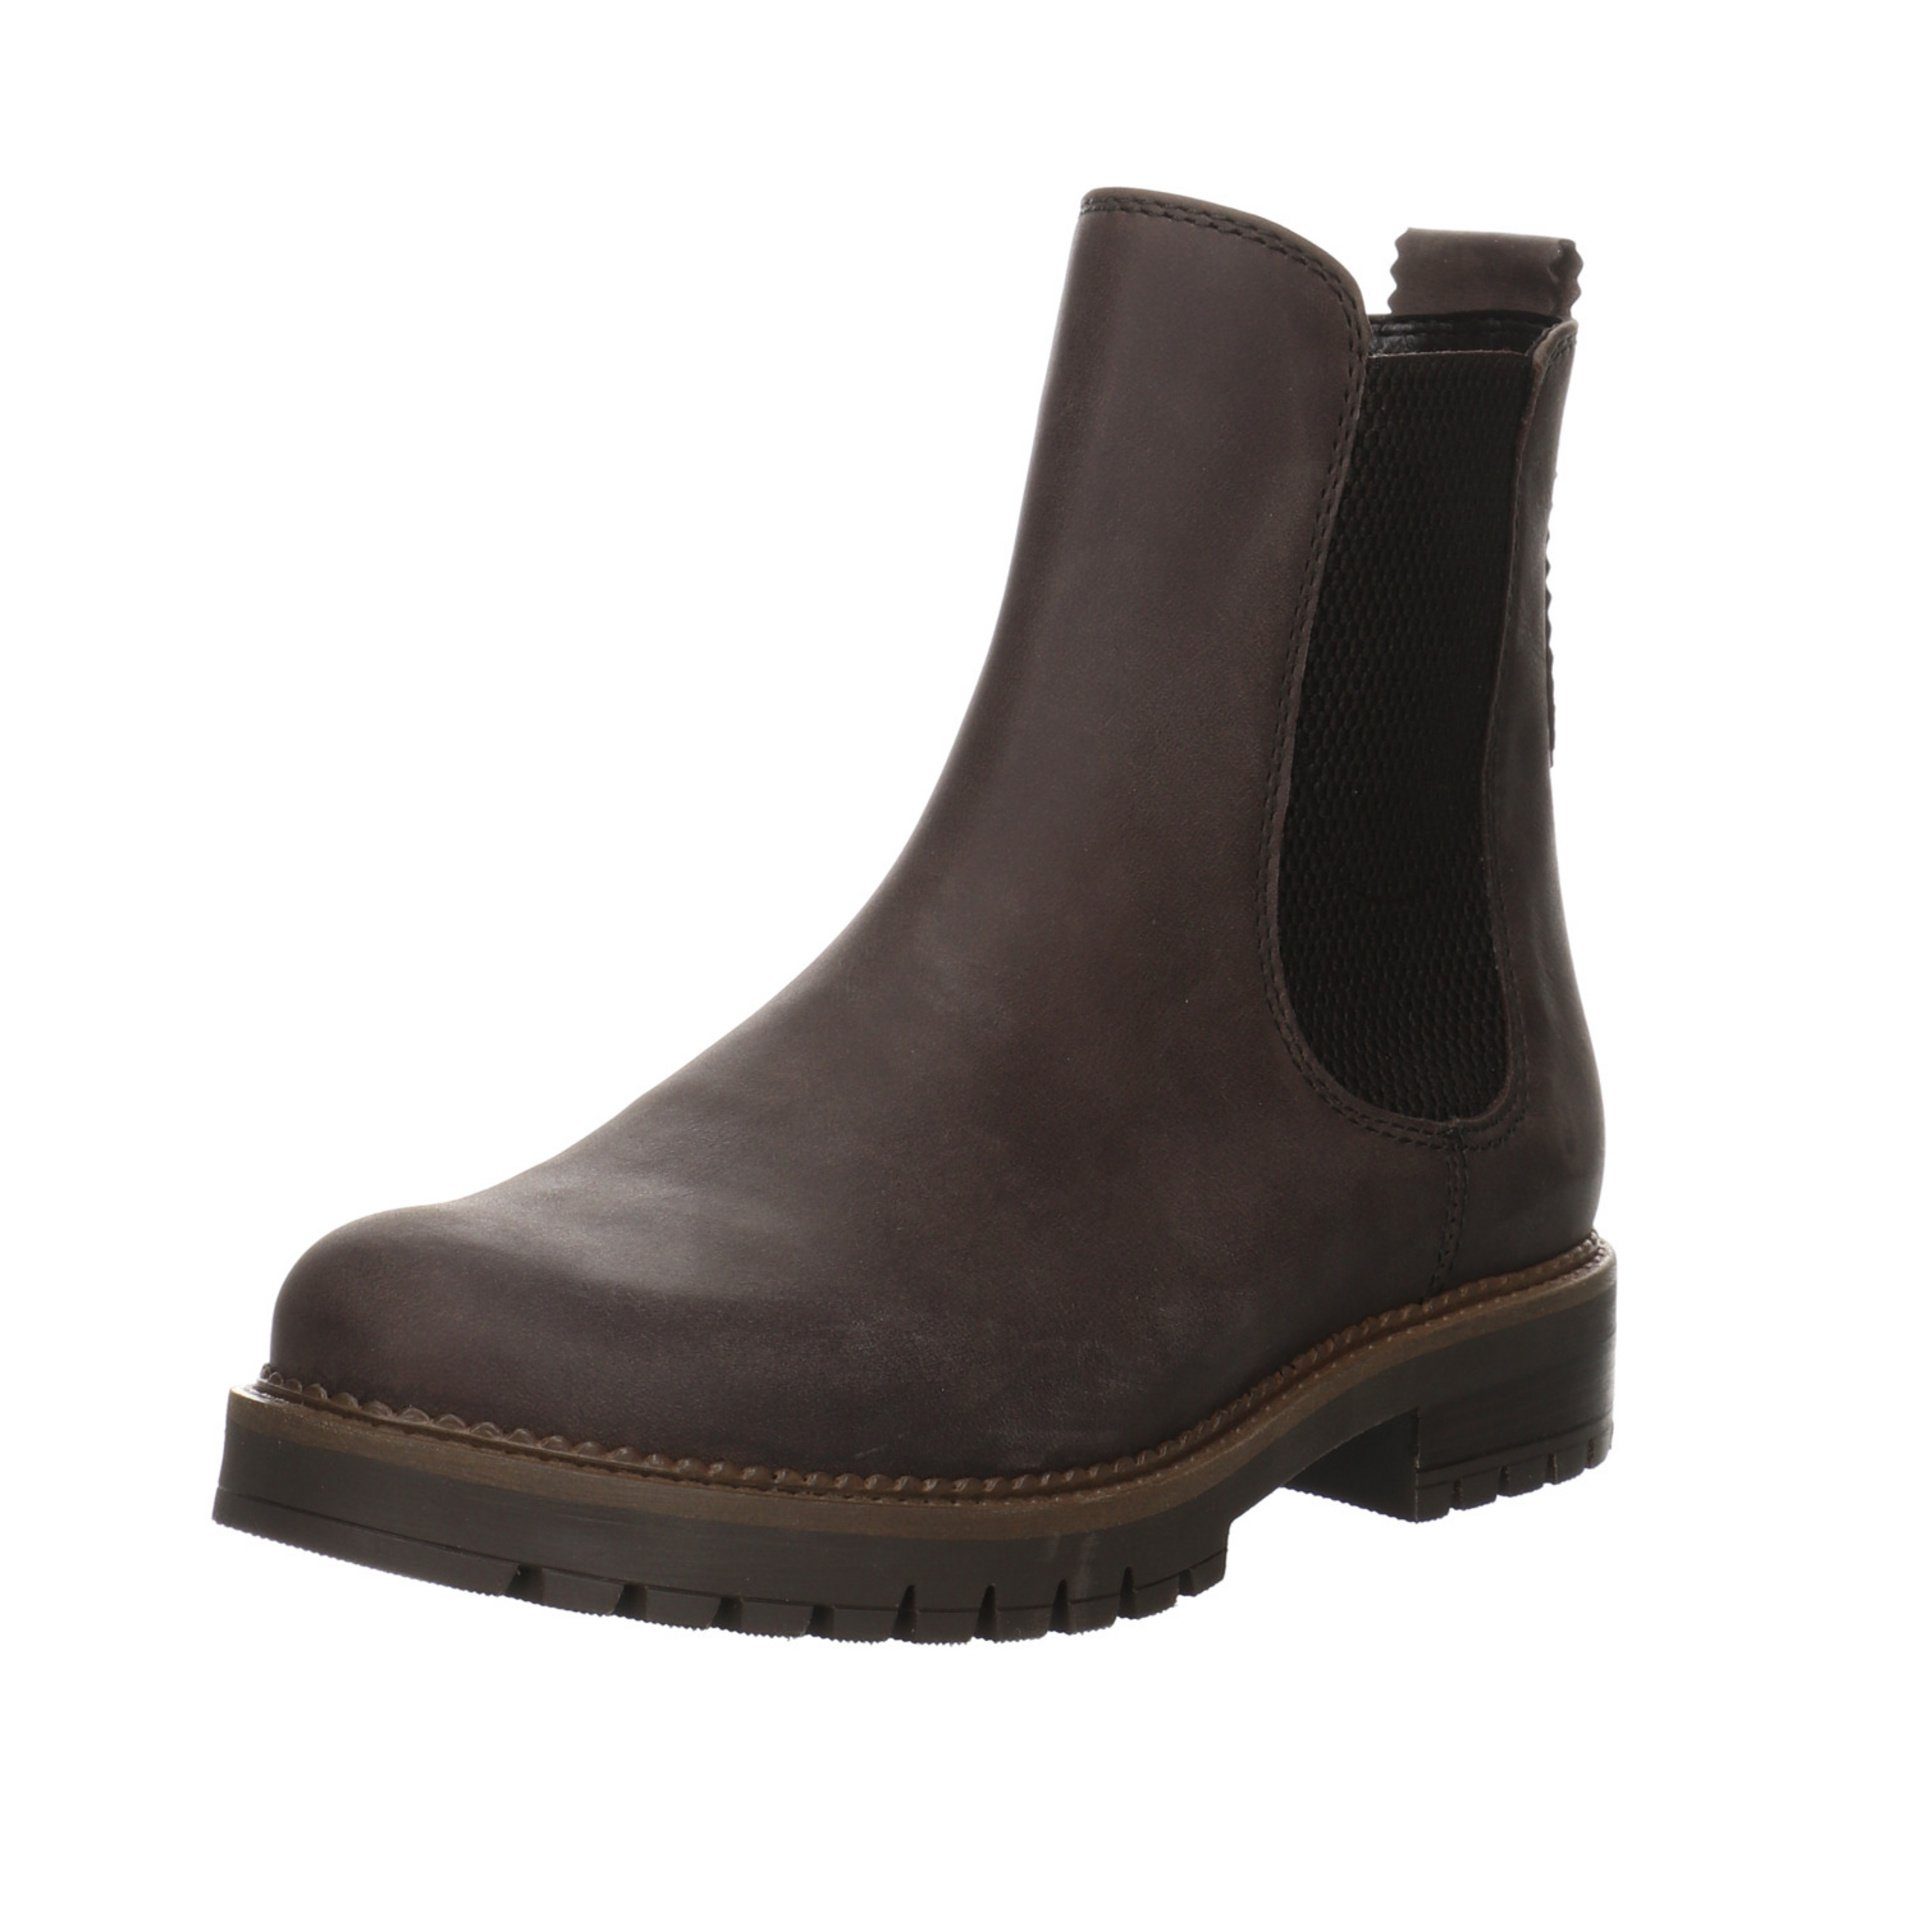 Gabor Damen Stiefel Schuhe Leder-/Textilkombination Braun Chelsea-Boots (espresso) Stiefel